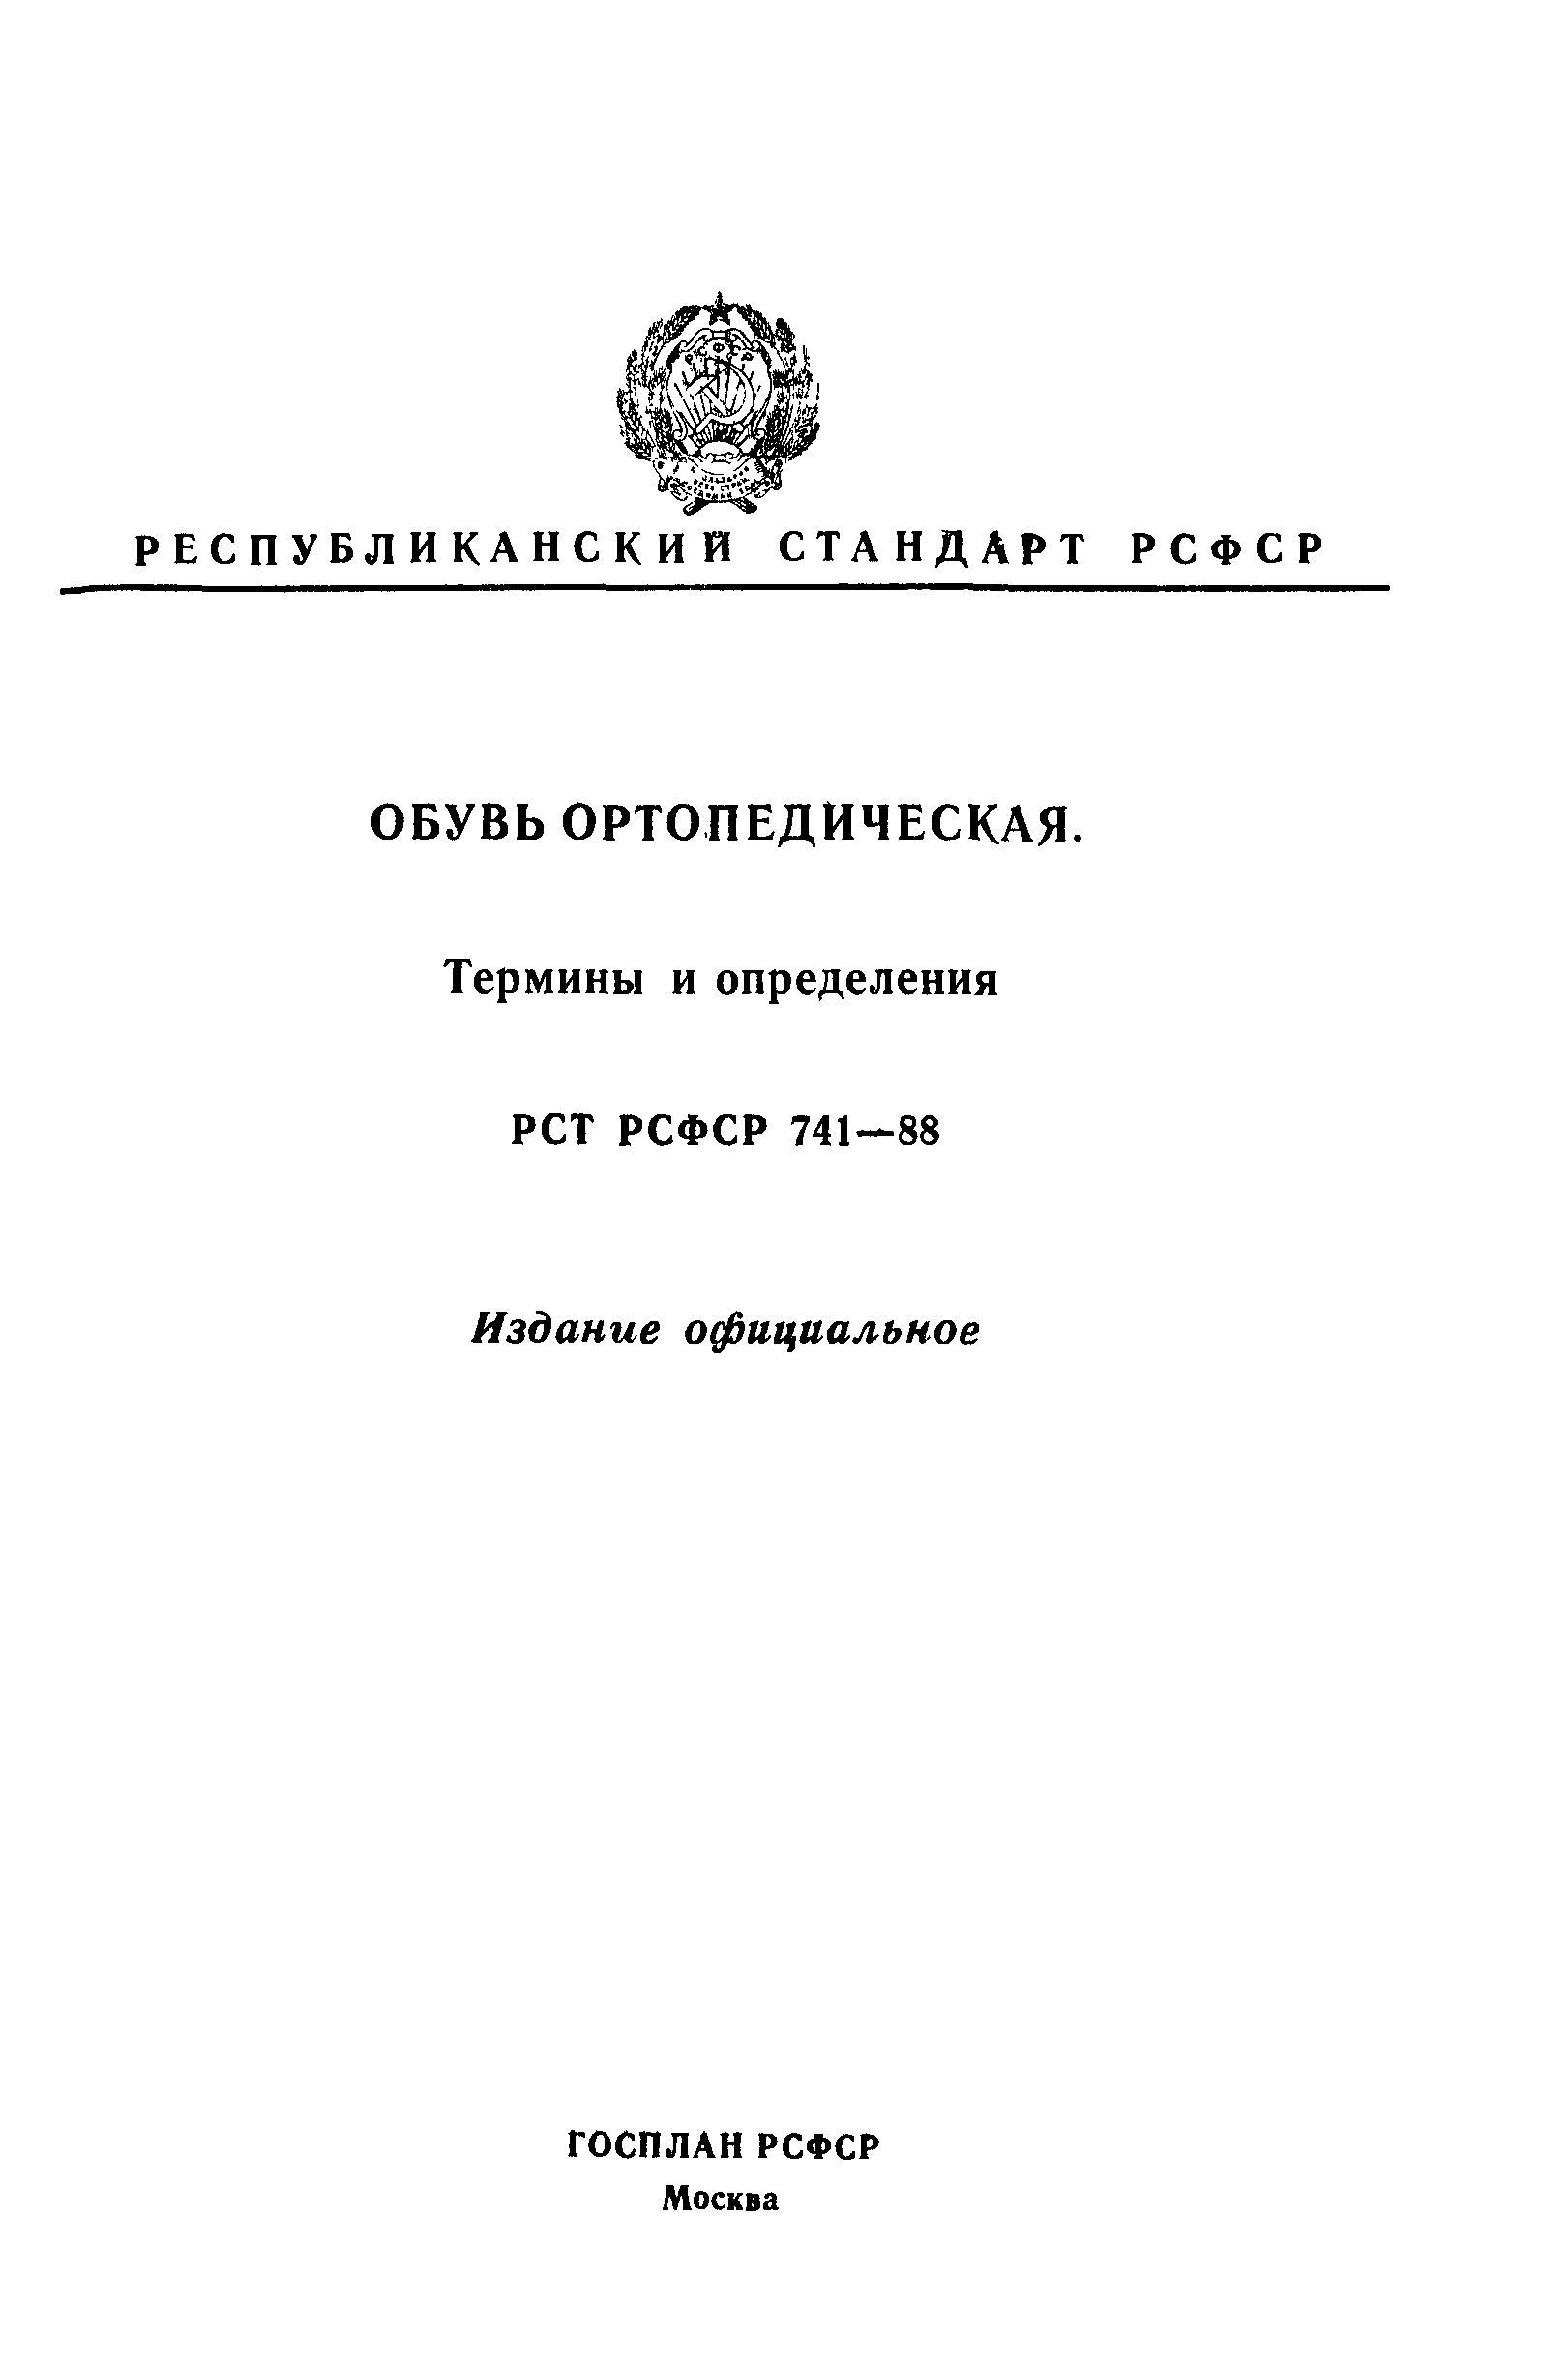 РСТ РСФСР 741-88